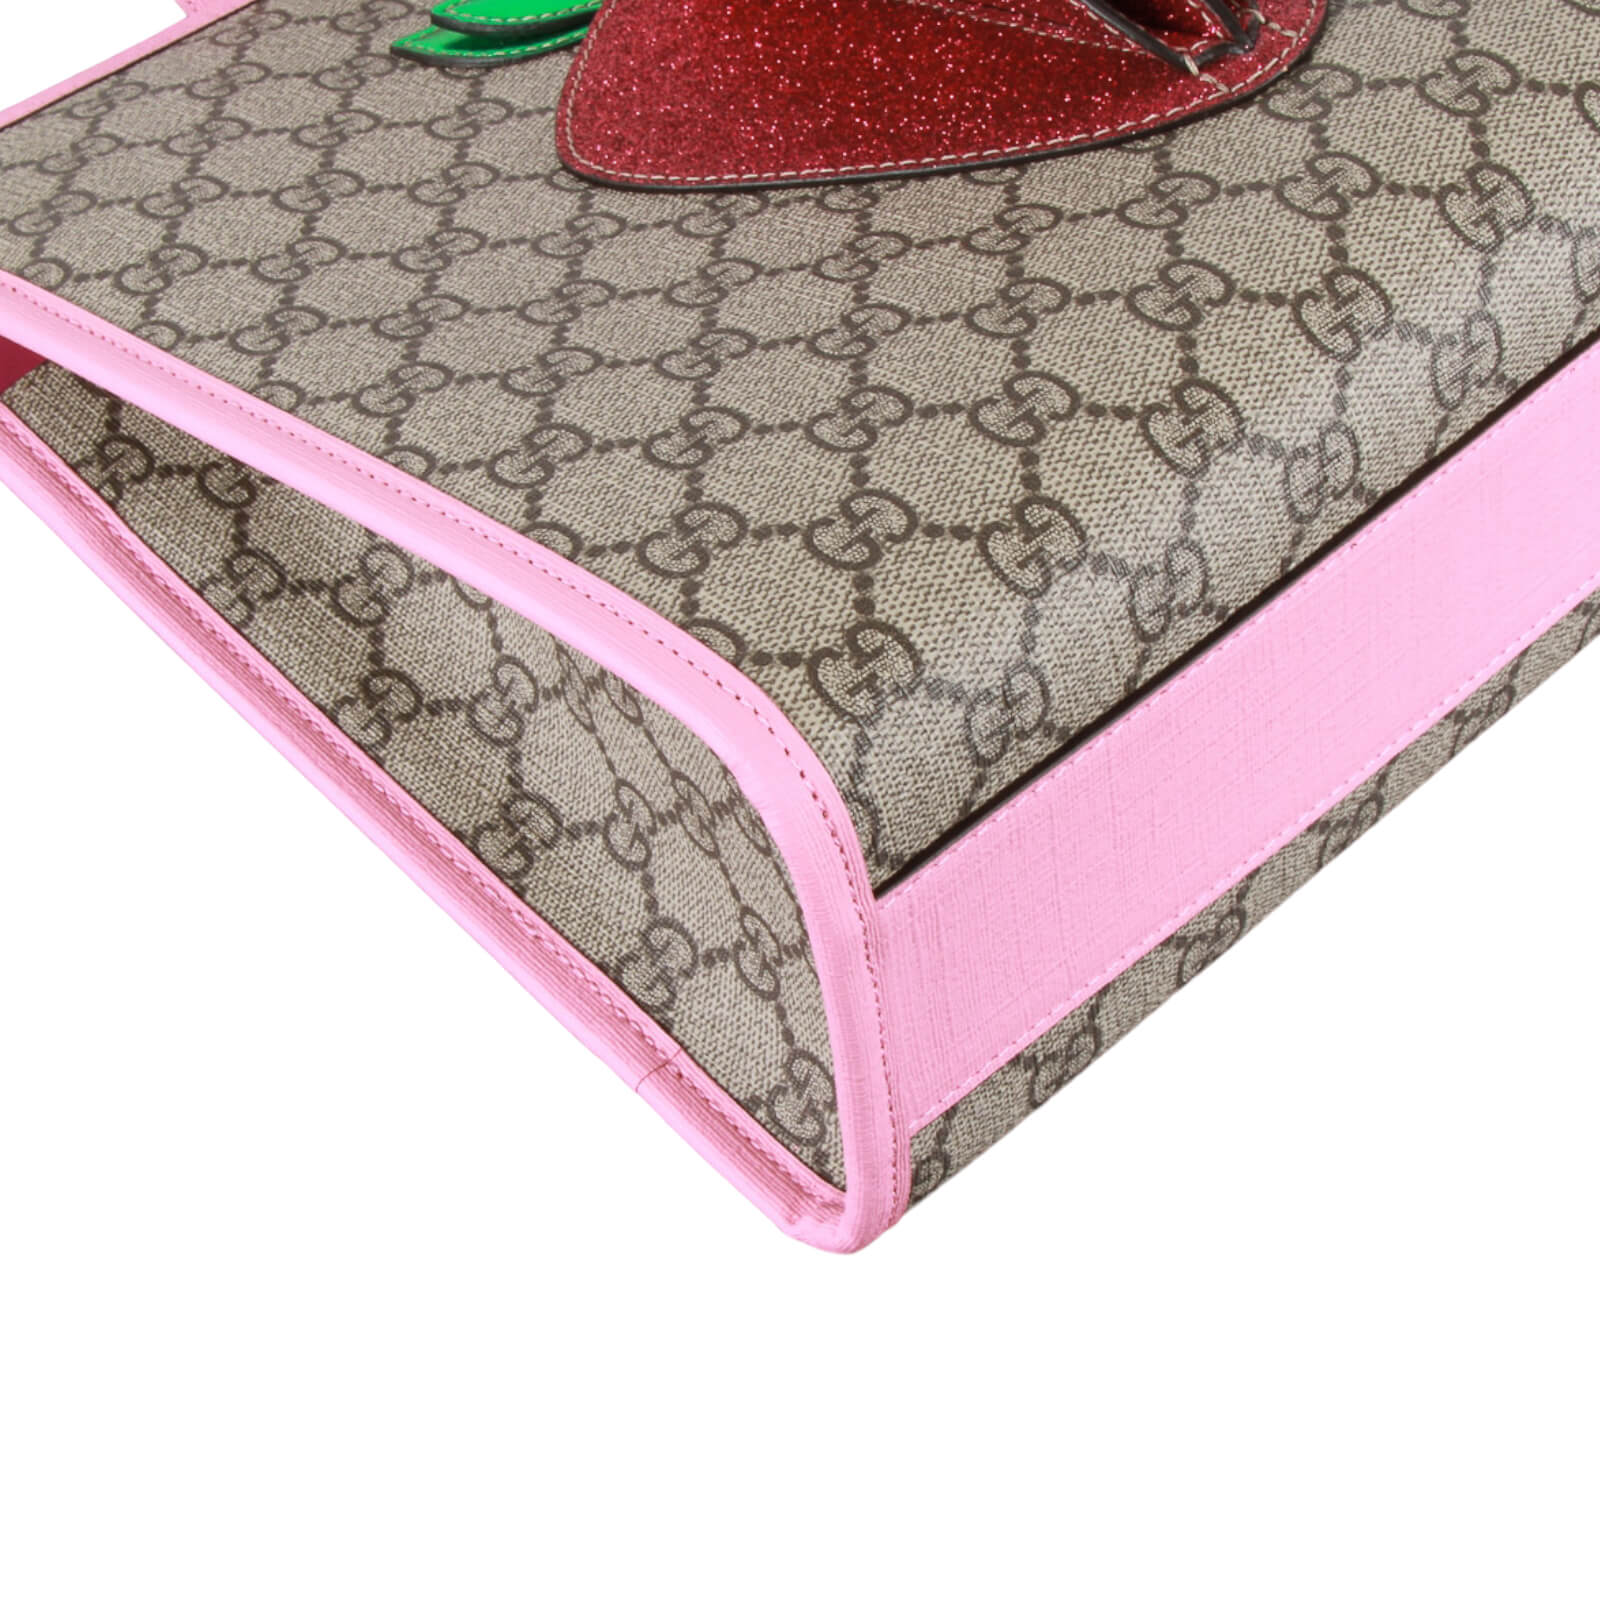 Gucci Children's 3D Strawberry GG Supreme Canvas Tote Bag